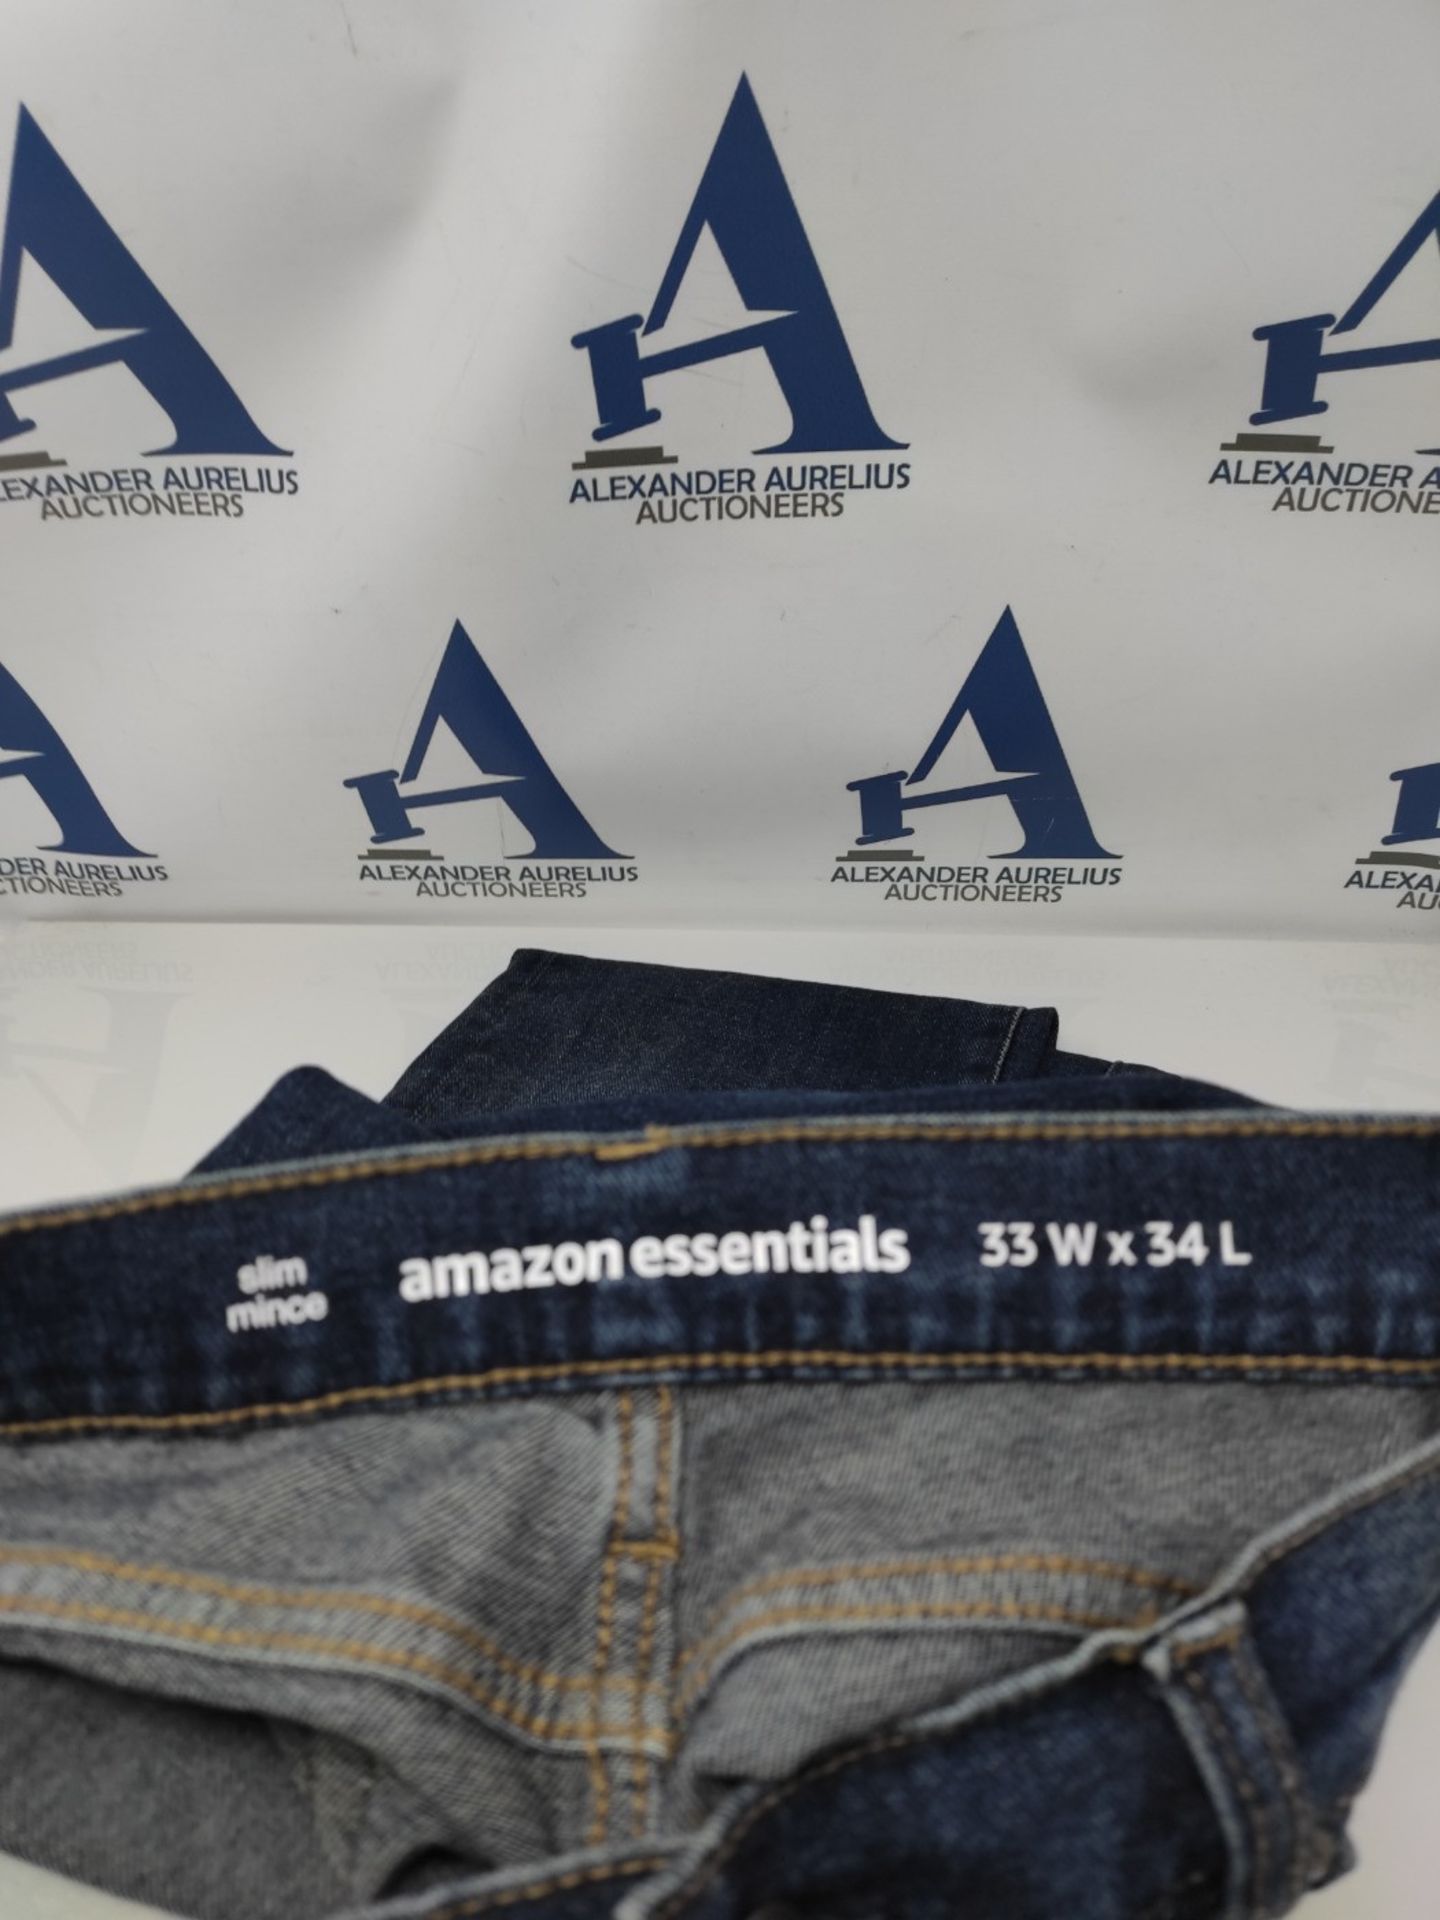 Amazon Essentials Men's Slim-Fit Jean, Dark Indigo/Washed, 33W/34L - Image 2 of 2